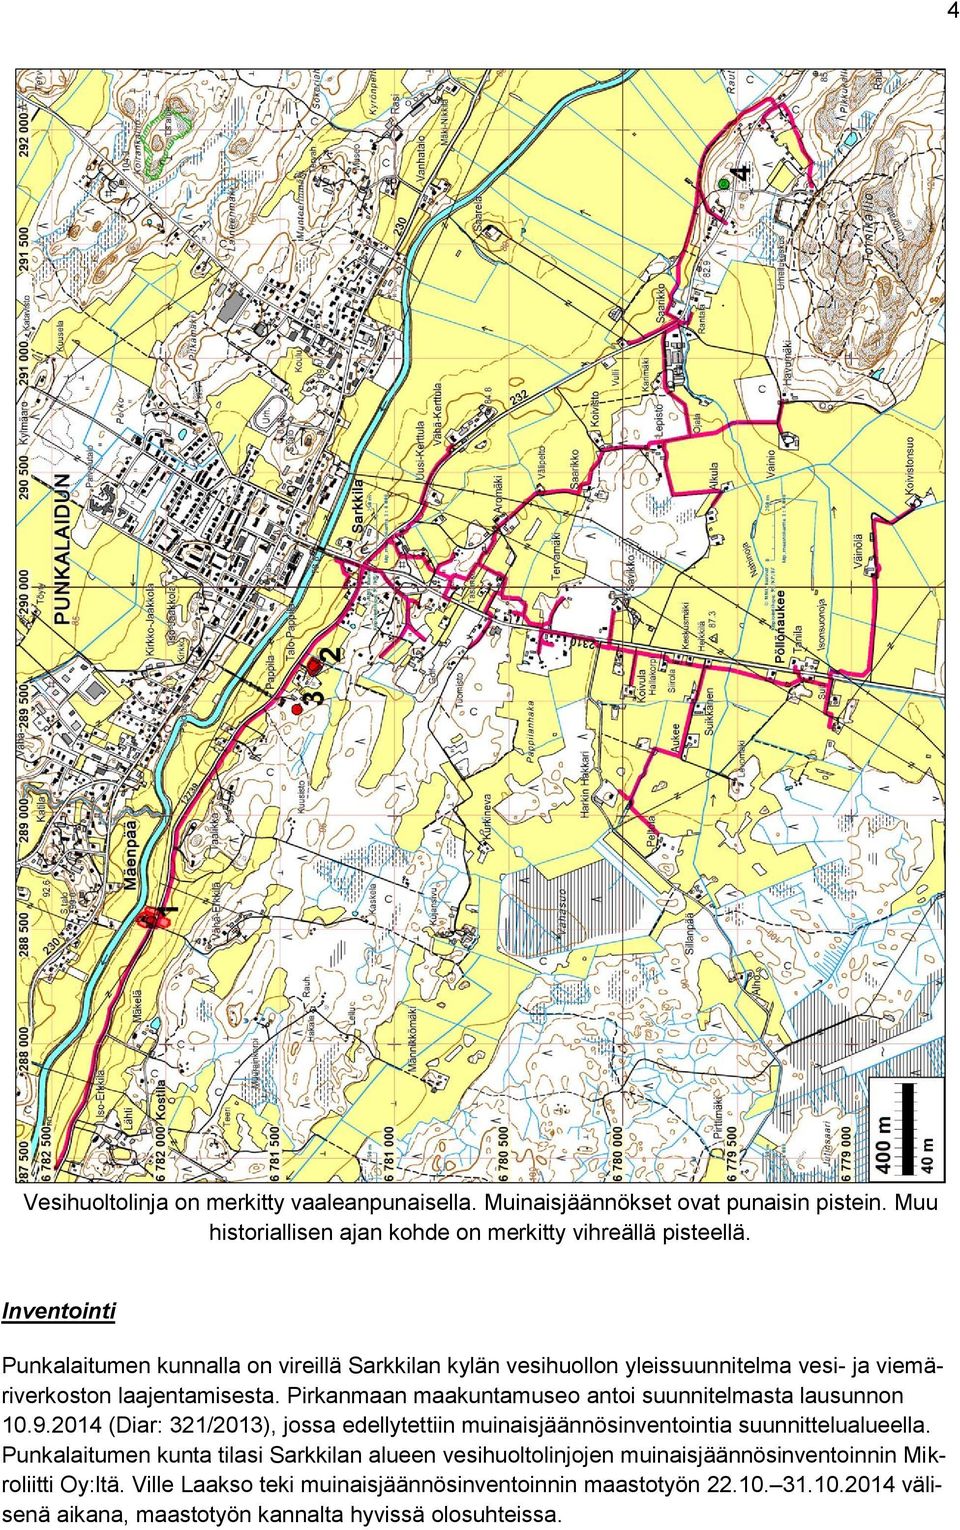 Pirkanmaan maakuntamuseo antoi suunnitelmasta lausunnon 10.9.2014 (Diar: 321/2013), jossa edellytettiin muinaisjäännösinventointia suunnittelualueella.